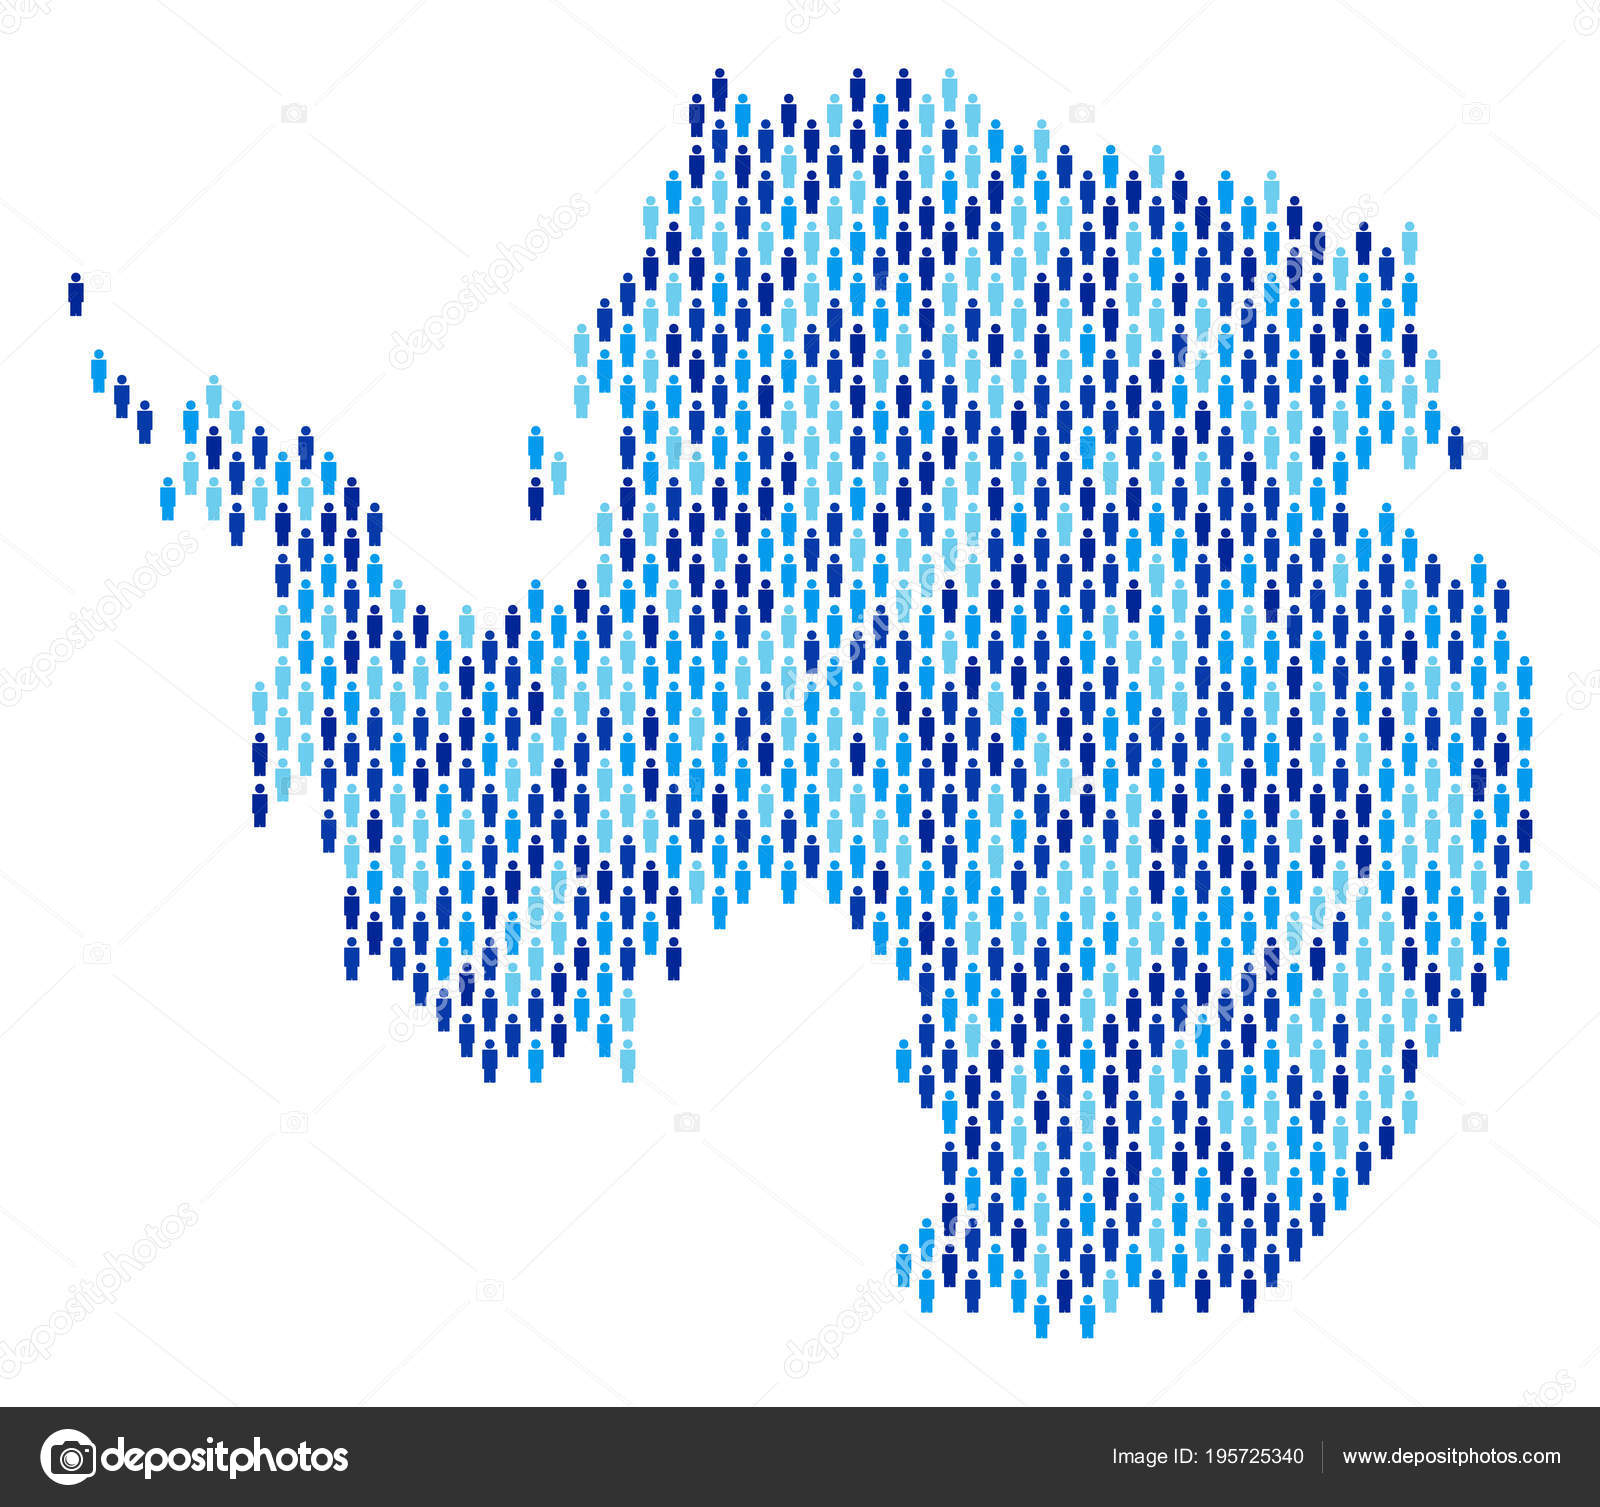 Antarctica Map Population Demographics Stock Vector